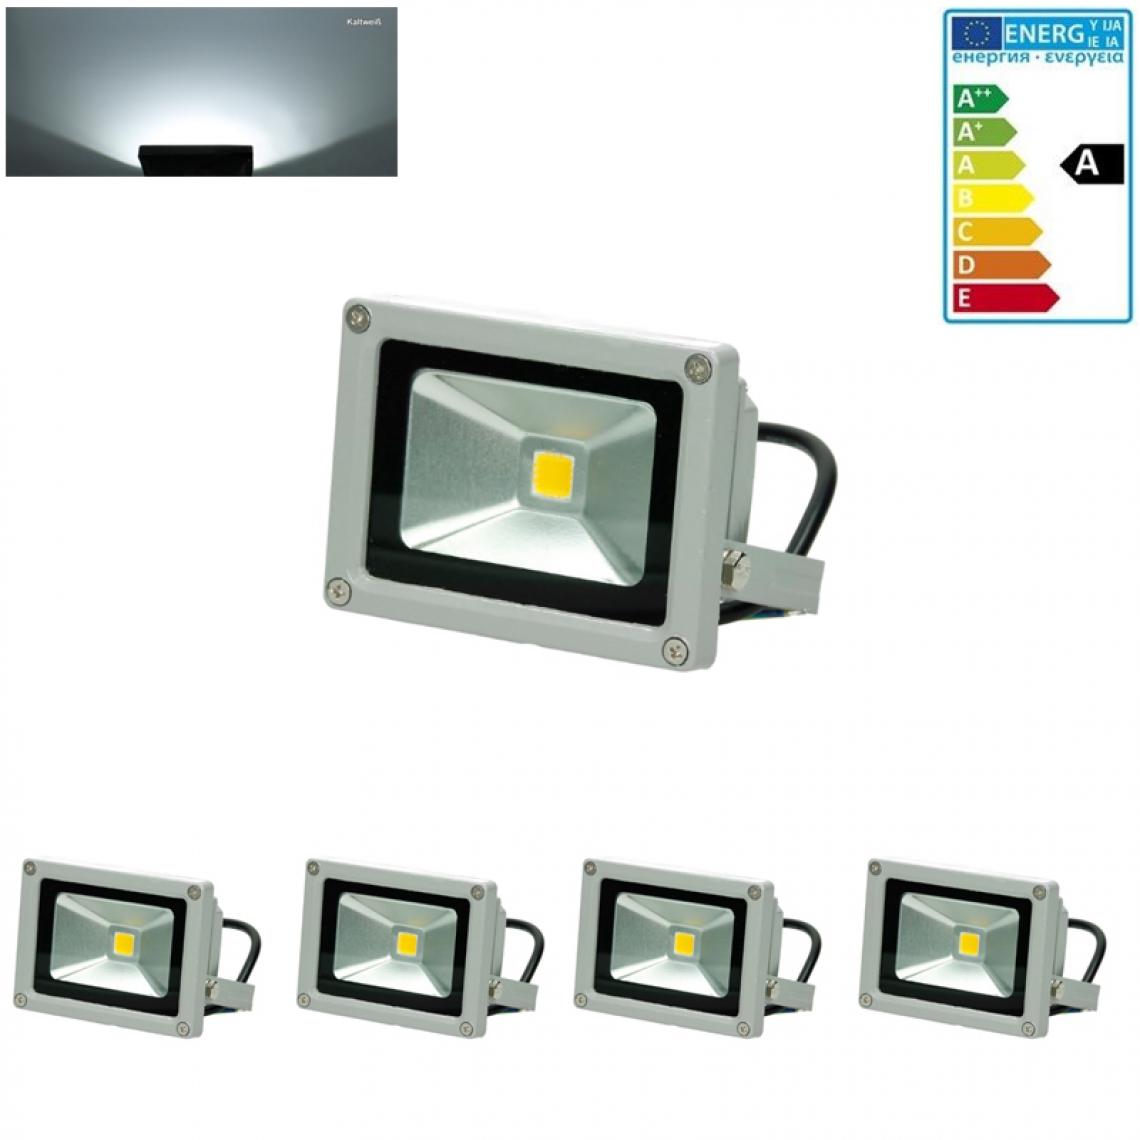 Ecd Germany - 4 x LED Projecteur lumiére extérieure éclairage blanc froid IP65 imperméable 10W - Projecteurs LED